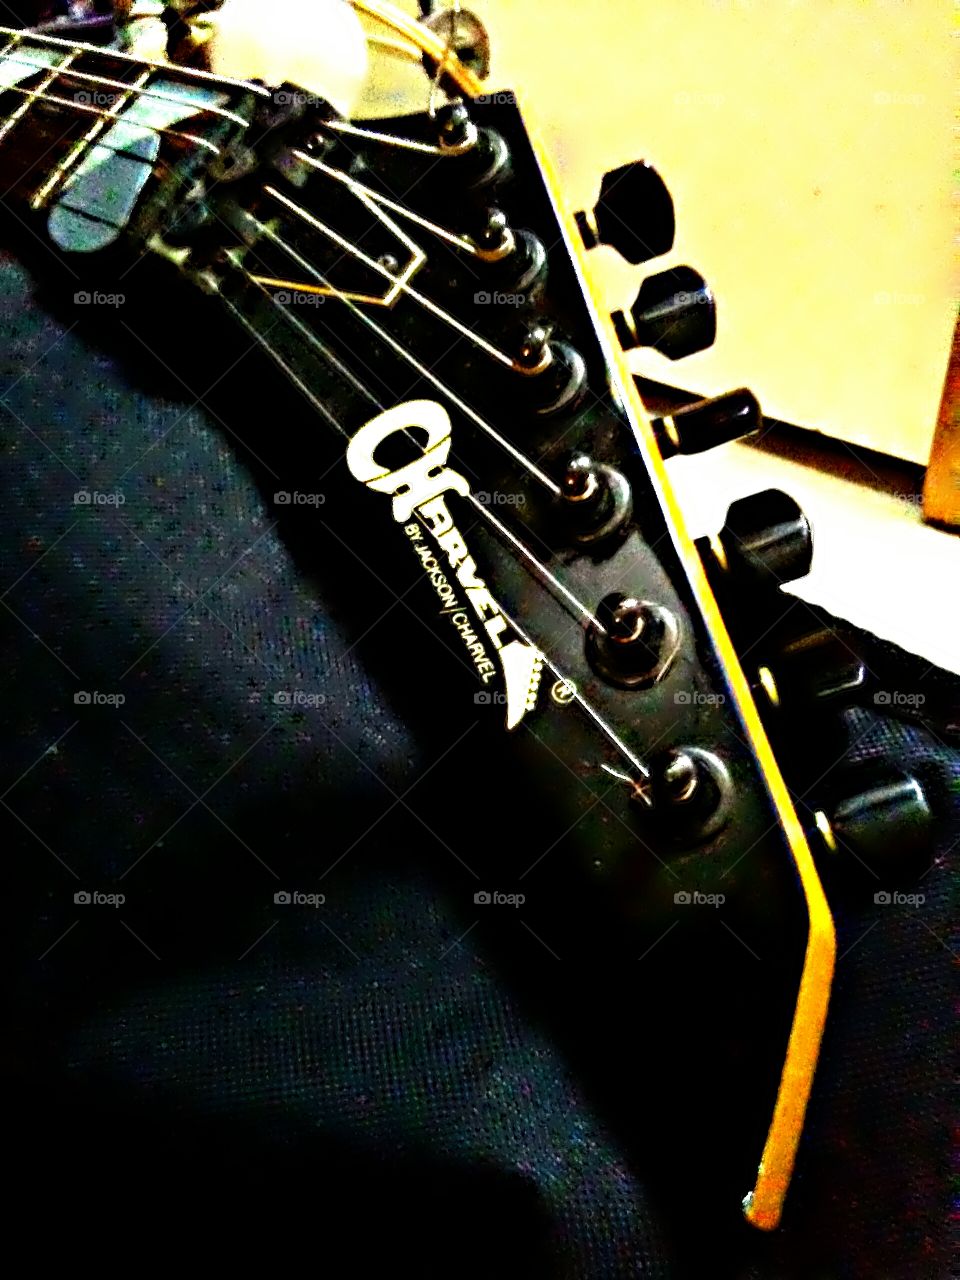 1987 vintage Charvel Jackson Model 4 Guitar